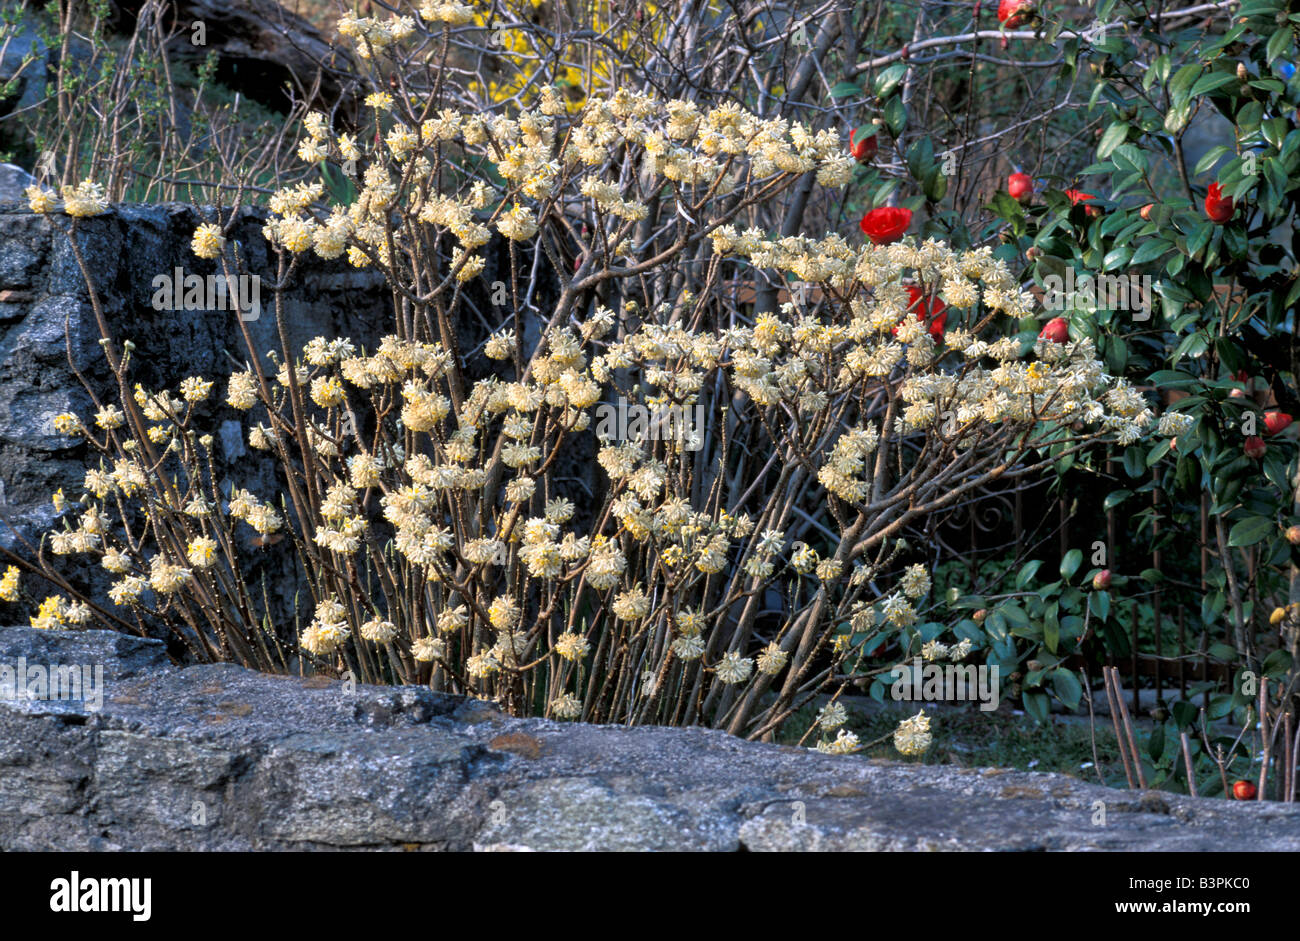 Edgeworthia chrysantha Stock Photo